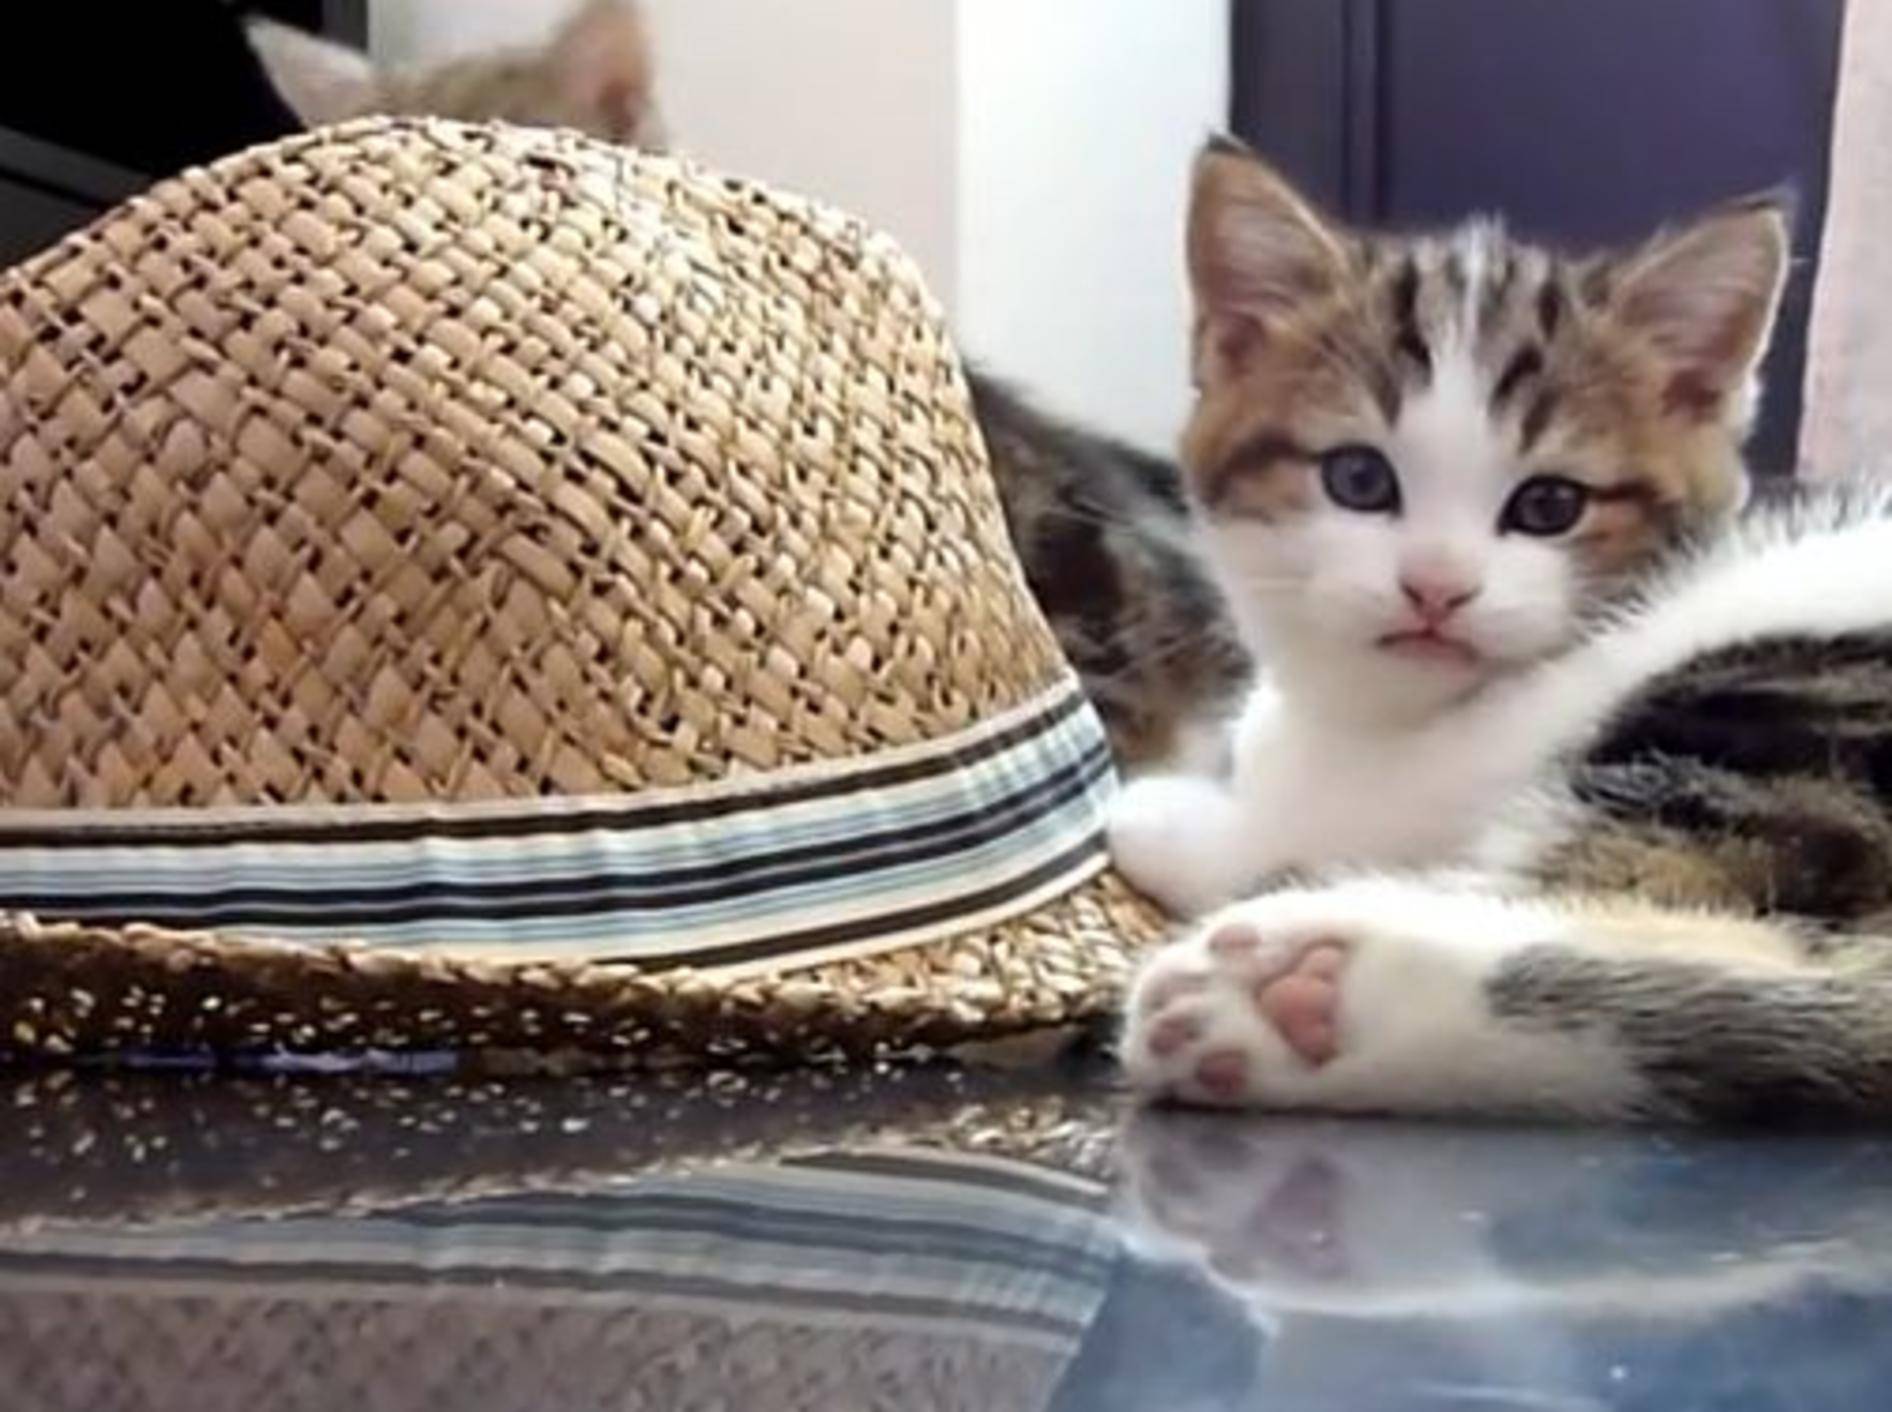 Süße Kätzchen: "Ein Strohhut ist so schön!" – Bild: YouTube / Funnycatsandnicefish